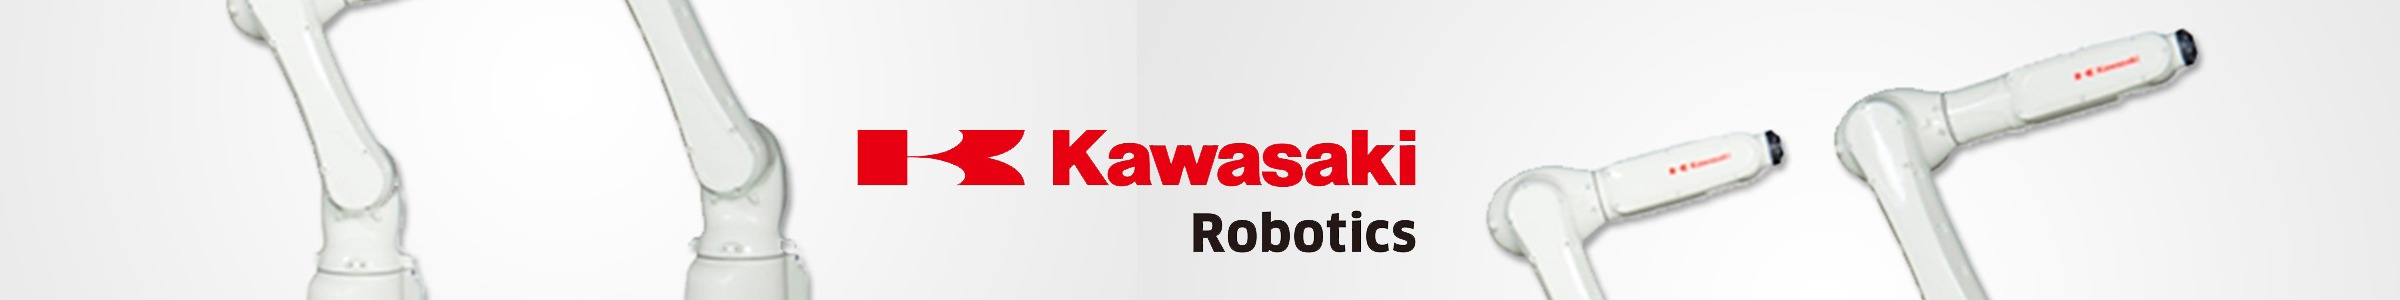 Robot RS007L de Kawasaki Robotics. Larraioz Elektronika-Kawasaki Robotics Iberian HUB distribuidor oficial para el mercado español.